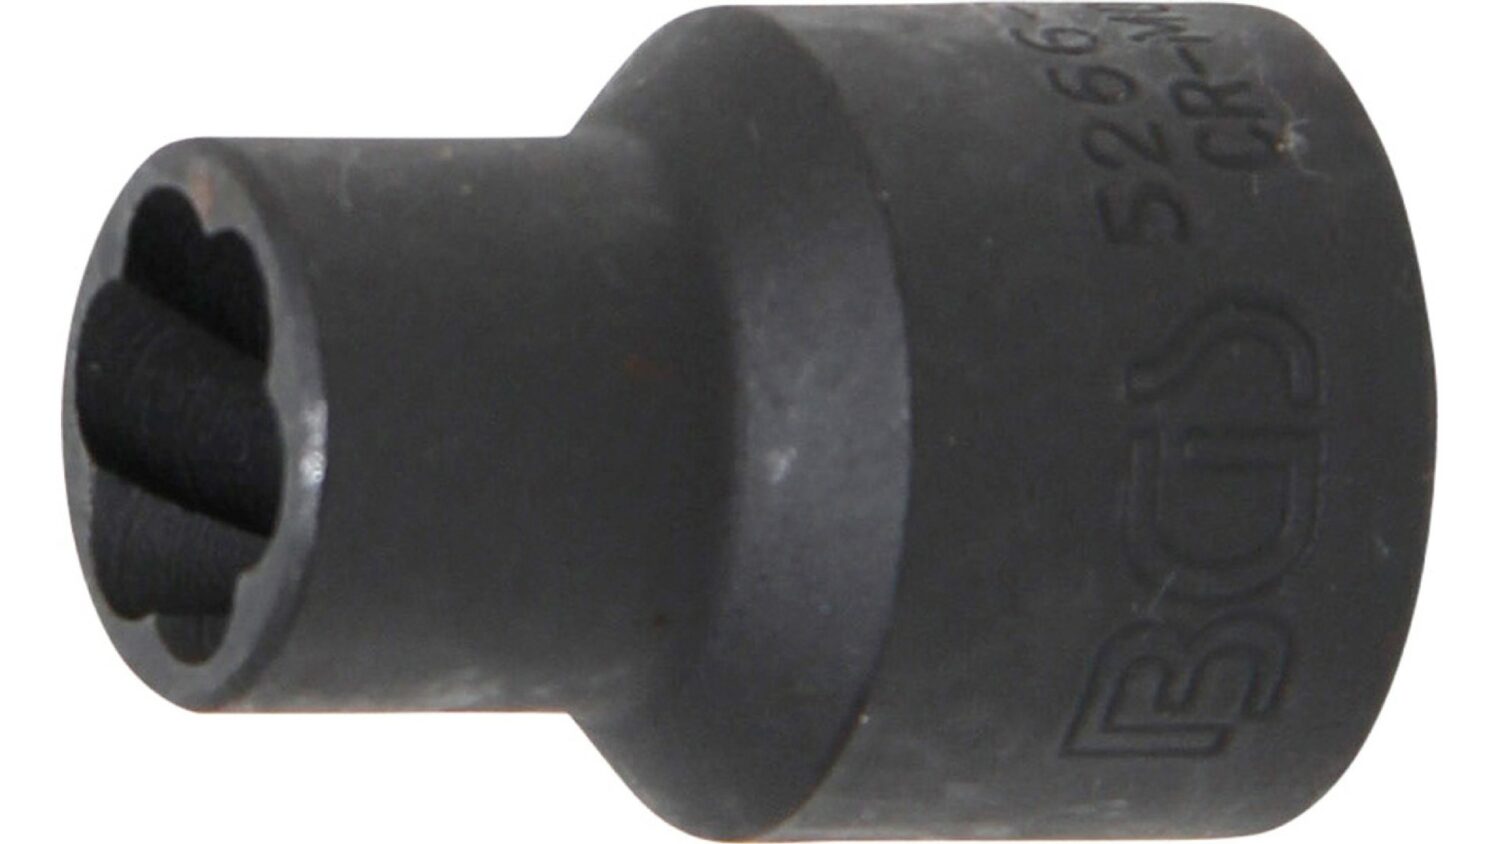 Bild vom BGS 5266-11 Spiral-Profil-Steckschlüssel-Einsatz / Schraubenausdreher | Antrieb Innenvierkant 12